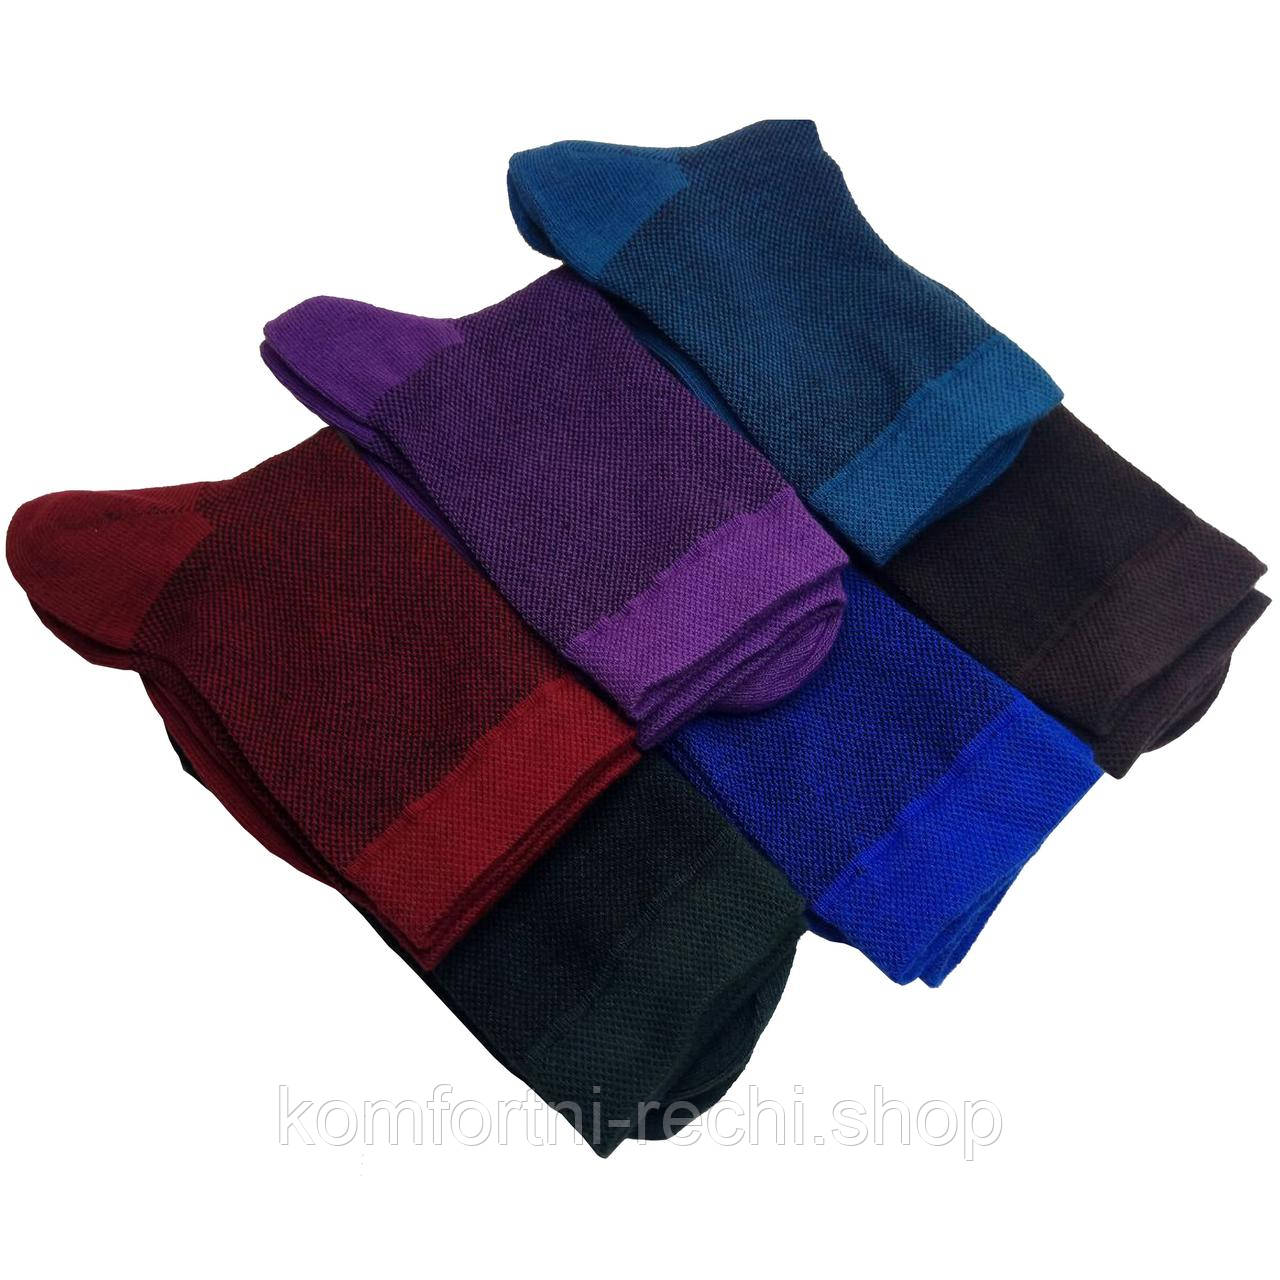 Шкарпетки чоловічі середні сітка літні бавовняні подарунковий комплект для чоловіків набір з 12 кольорових однотонних пар